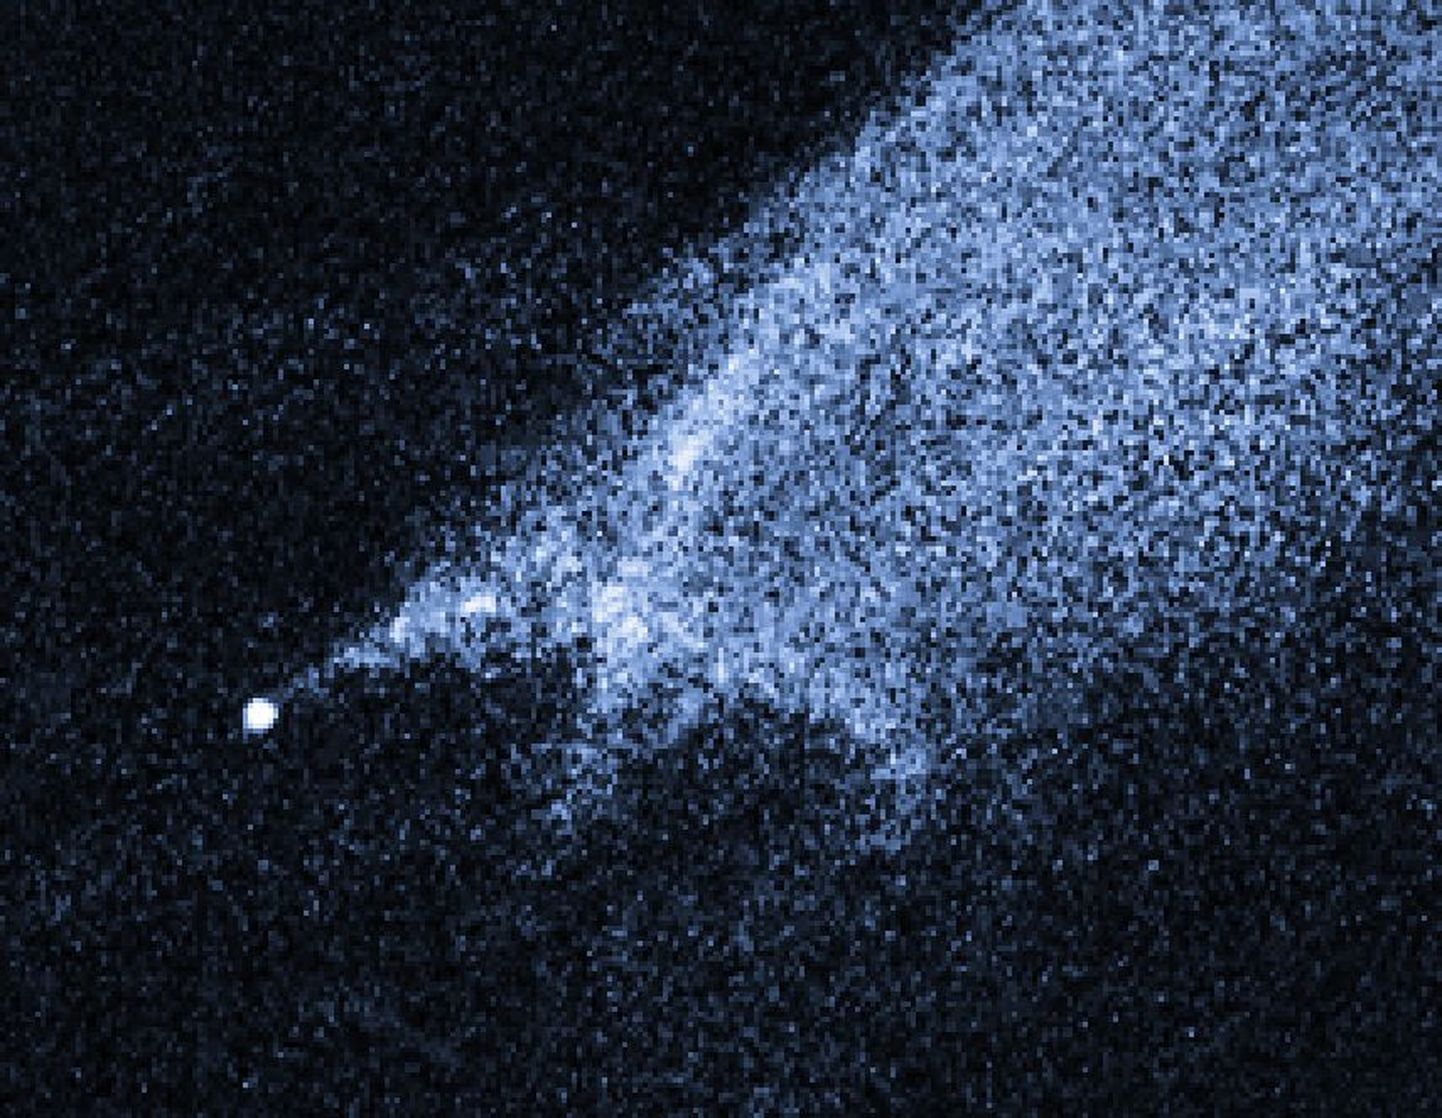 Hubble´i kosmoseteleskoobi pilt oletatavast asteroidide kokkupõrkest